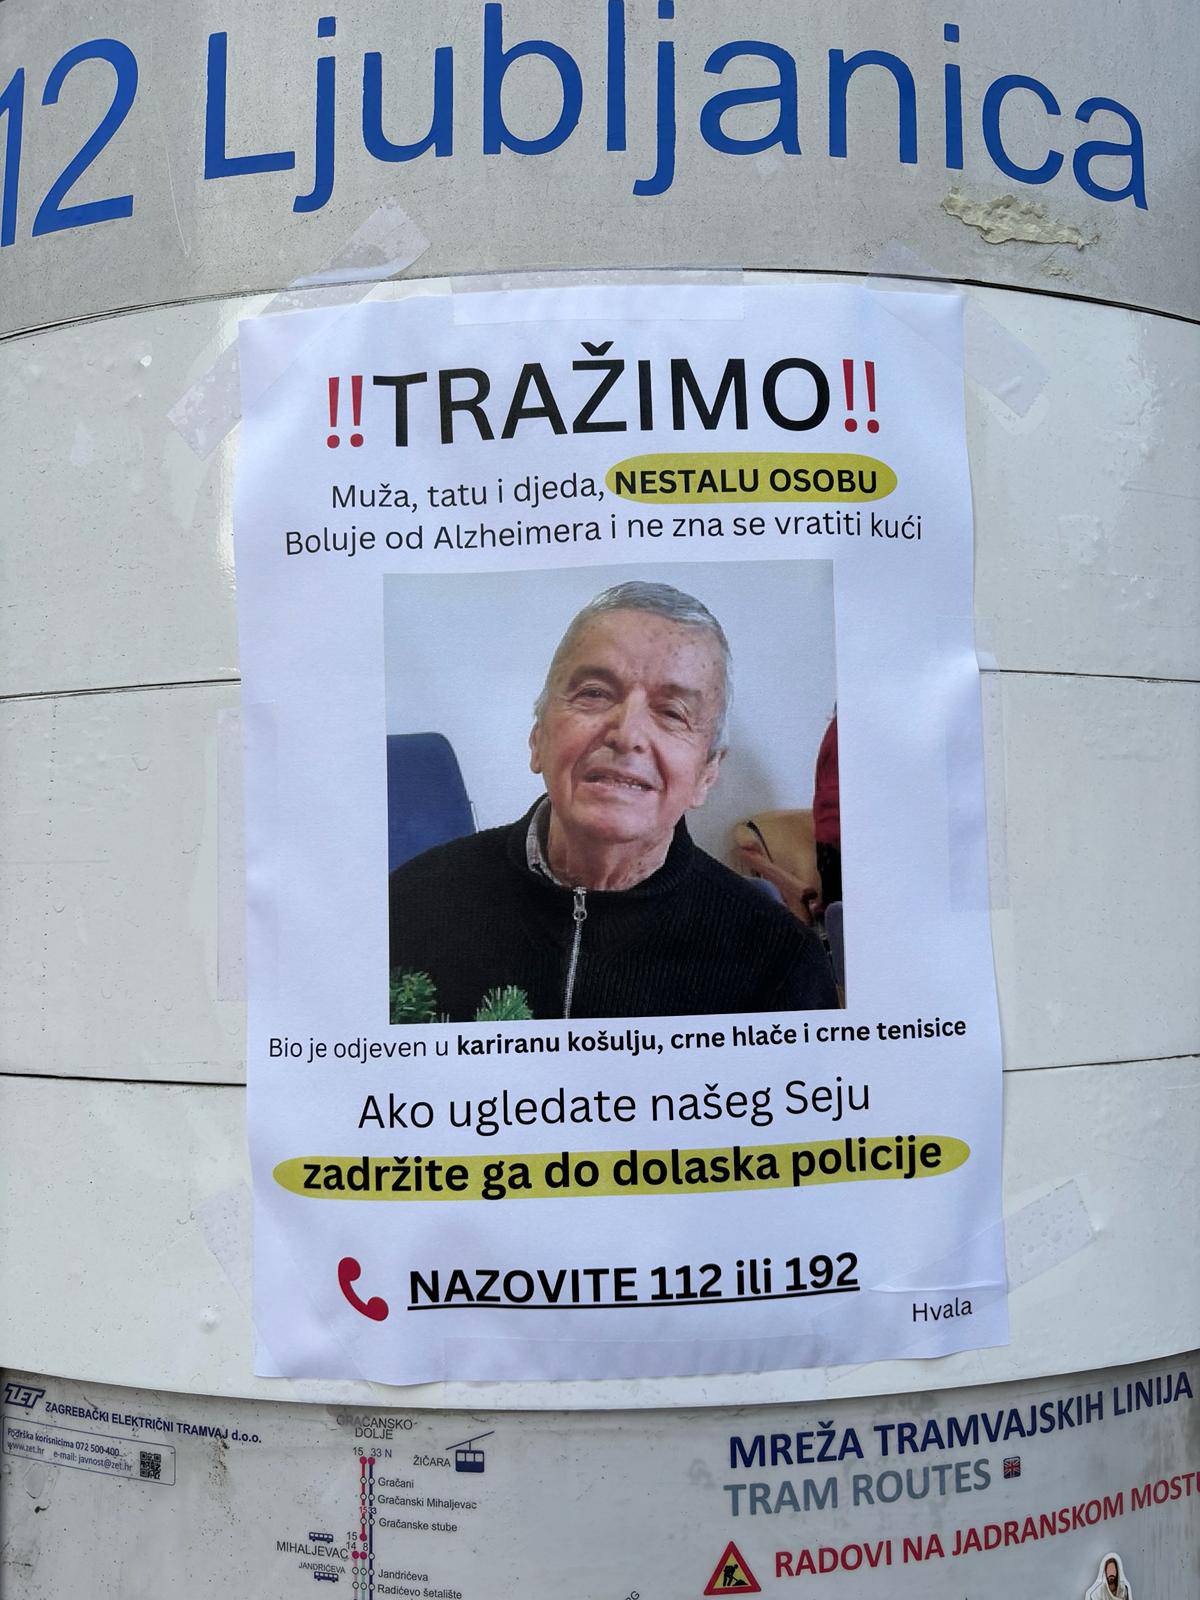 Obitelj ga traži gotovo mjesec dana:  Ako ugledate našeg Seju, zadržite ga. Nestao je u Zagrebu